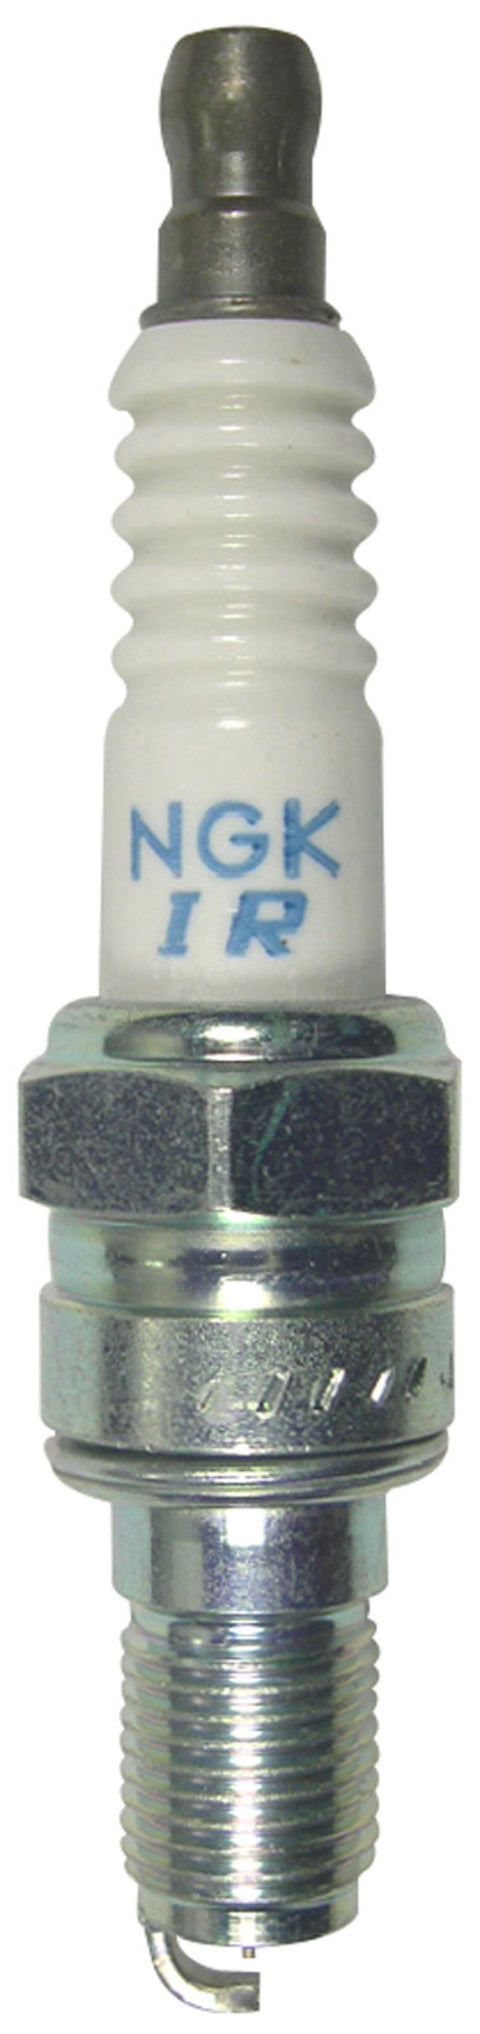 NGK Laser Iridium Spark Plug Box of 4 (4888)